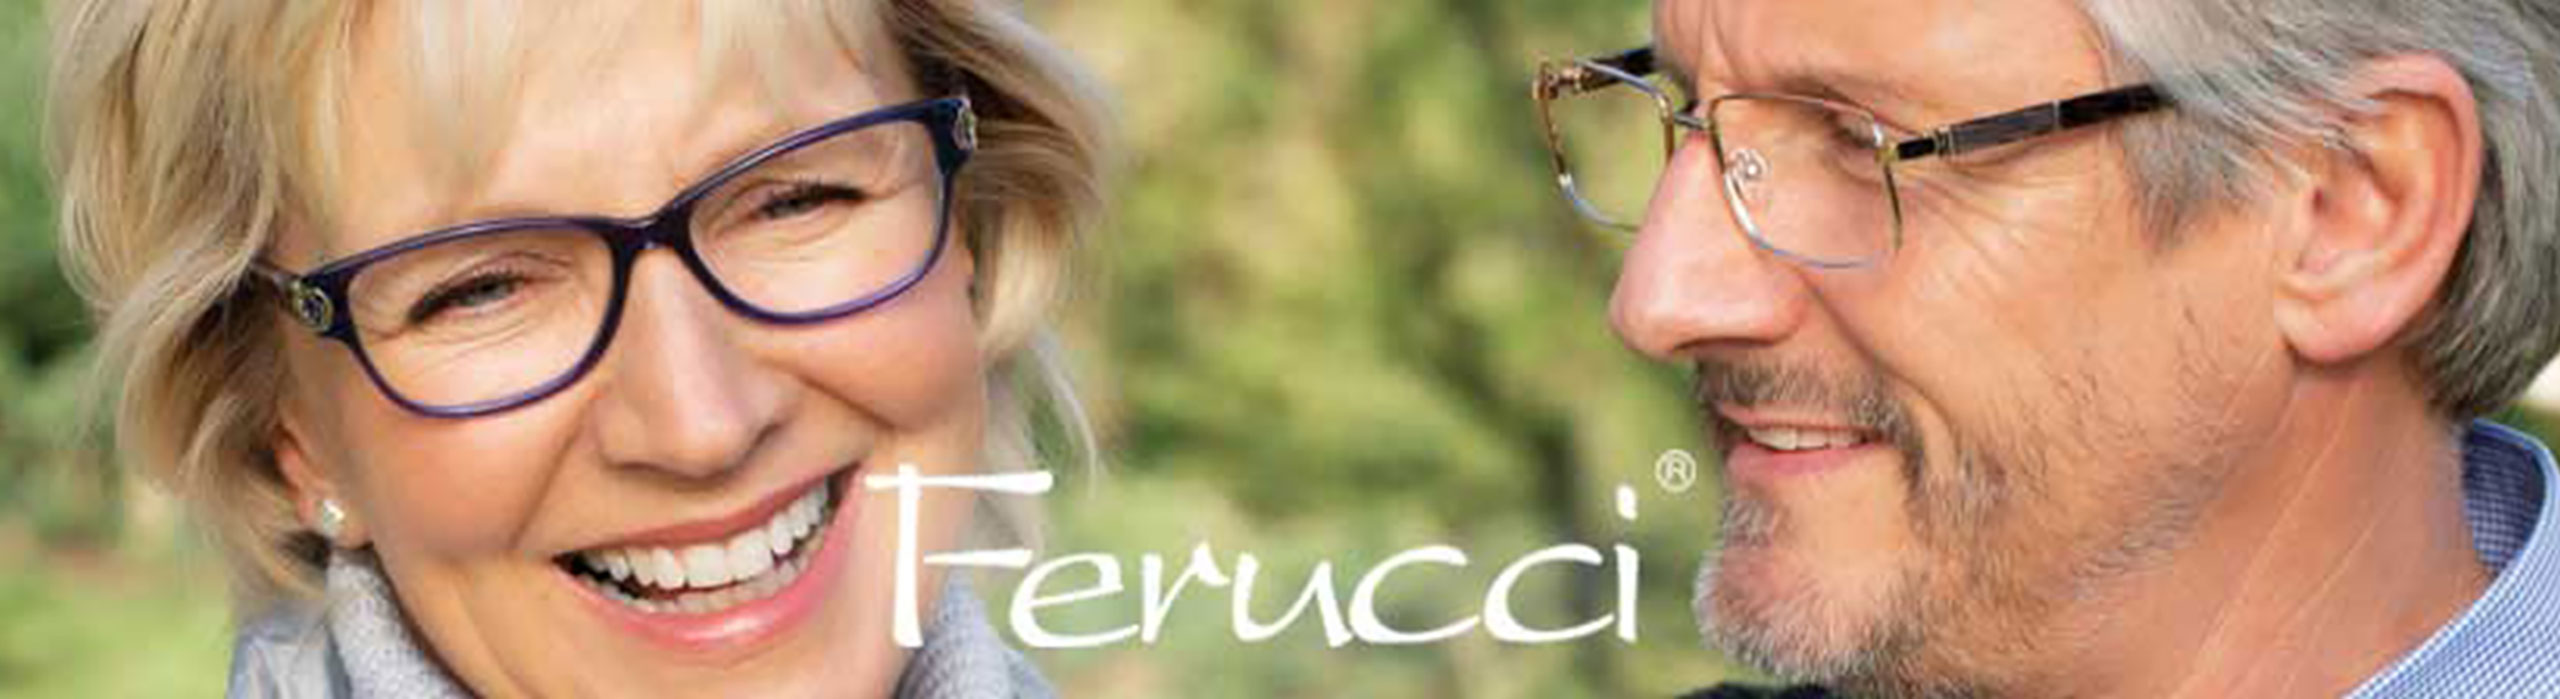 Ferucci Eyewear